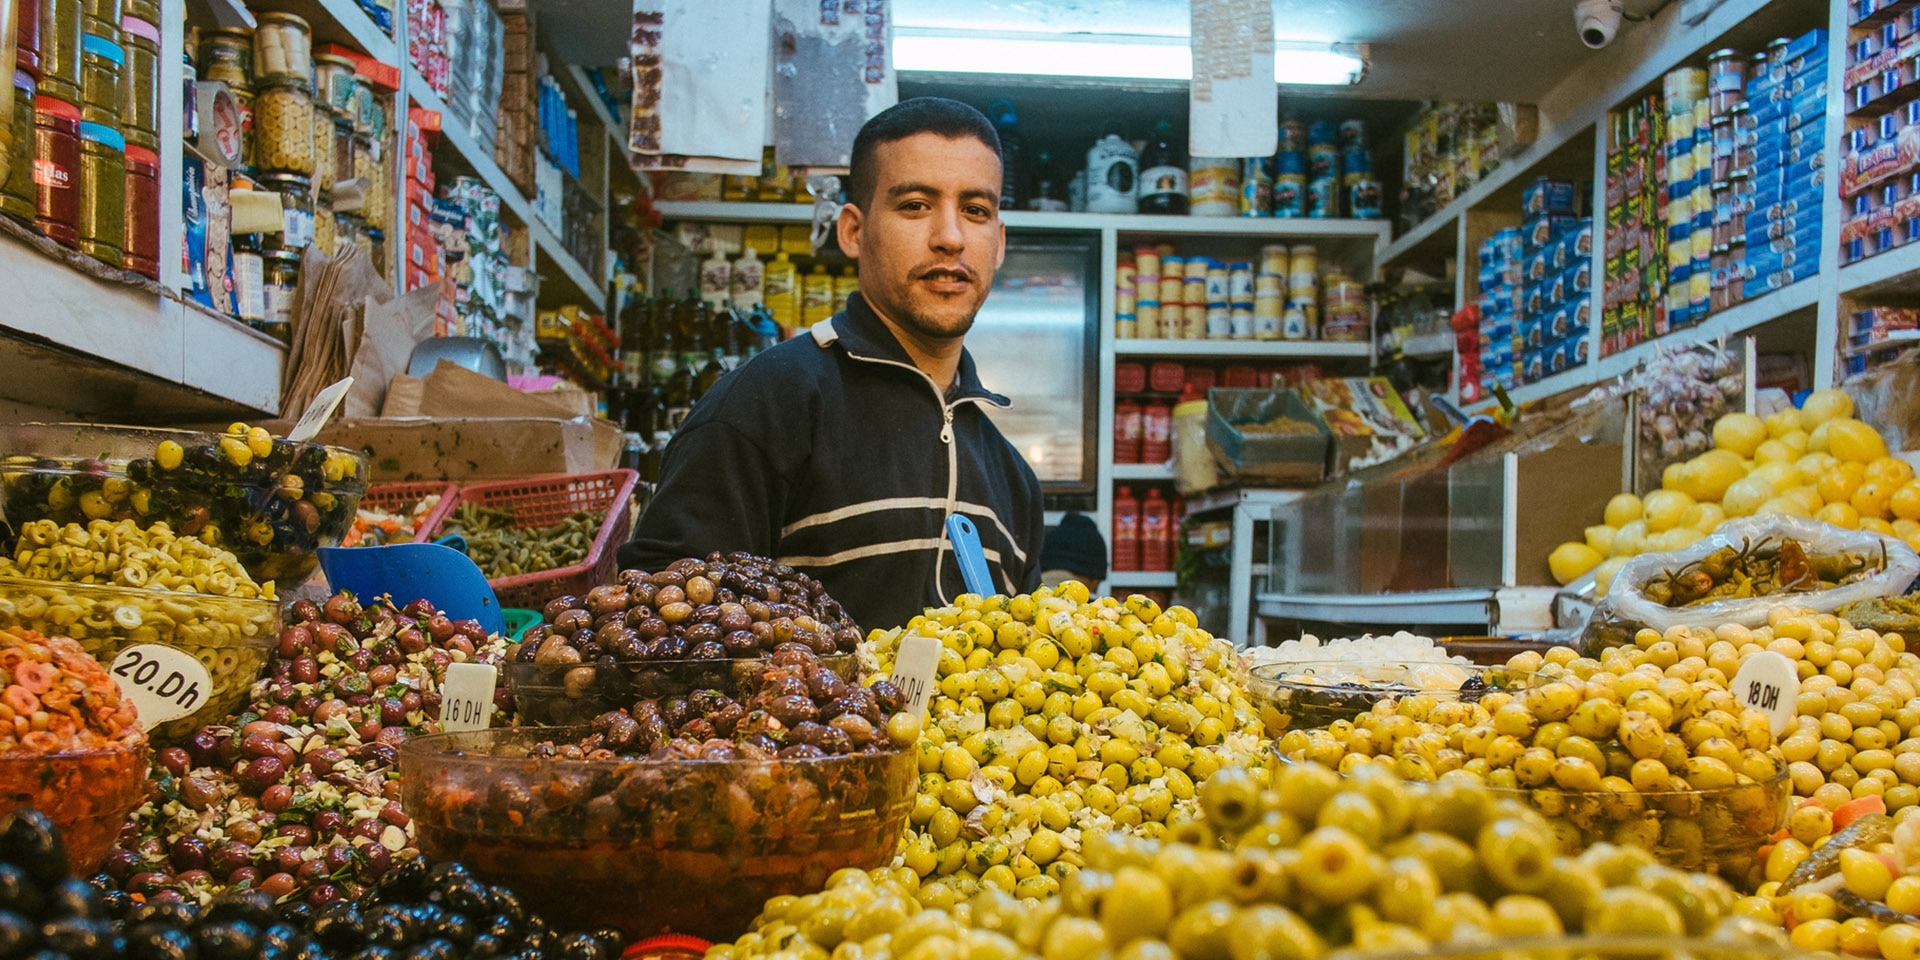 Ein Olivenverkäufer steht in einem kleinen Laden vor einer grossen Auslage Oliven aller Art.